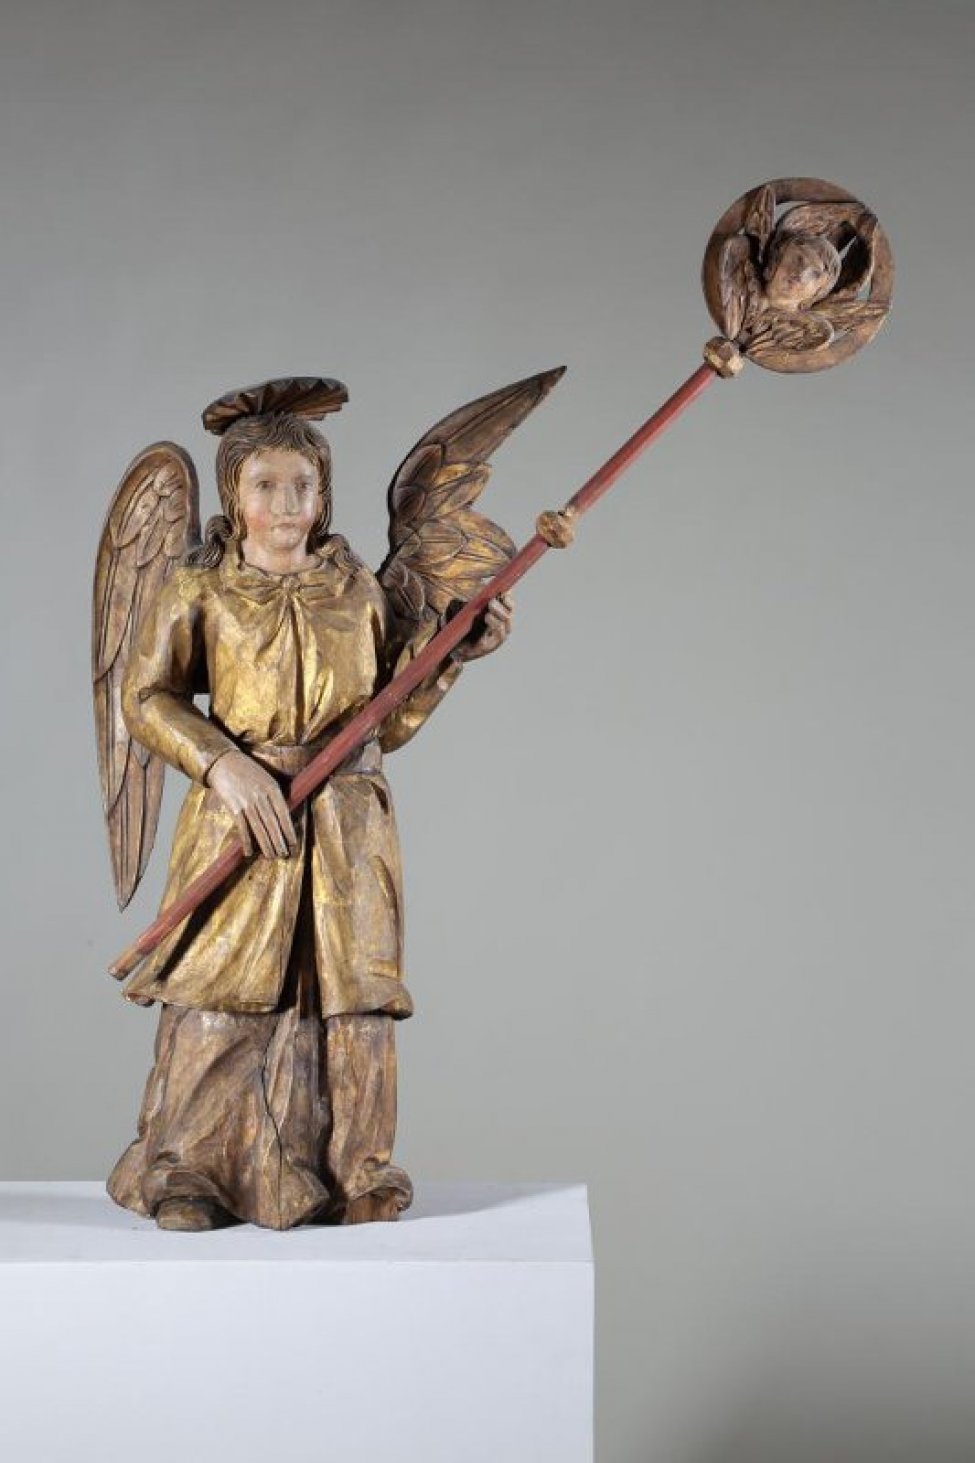 Ангел (справа) изображен с откинутым влево корпусом. В поднятой влево левой руке и в опущенной немного ниже пояса правой руке держит красный стержень рипиды, поднятой влево. На круглом позолоченном диске рипиды - шестикрылое скульптурное изображение серафима. Правое крыло у ангела опущено, левое поднято вверх. Одежды: верхние - позолочены с бантами наверху у шеи и с несколькими складками на груди; ниже пояса одежда расходится, подол вздут. Нижние одежды посеребренные, переданы широкими складками. Складки на одеждах редки и изогнуты в разных направлениях. Крылья ангела посеребрены. На голове - круглый нимб с рельефными лучами.